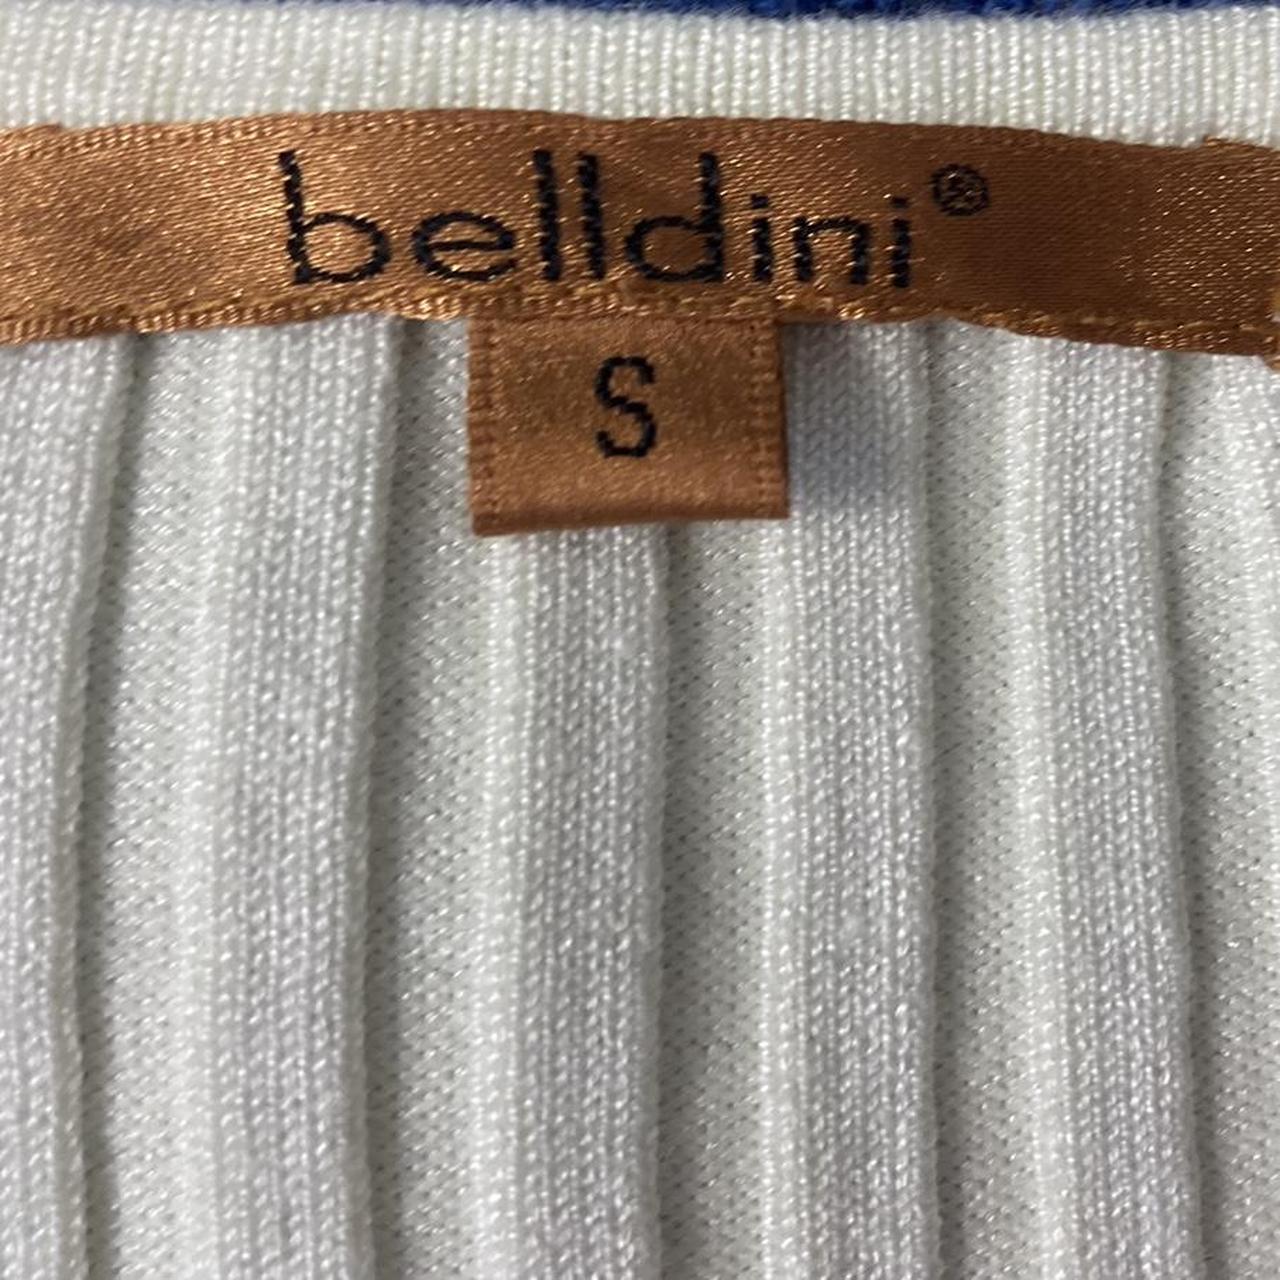 Belldini Women's Cream and White Vest (5)